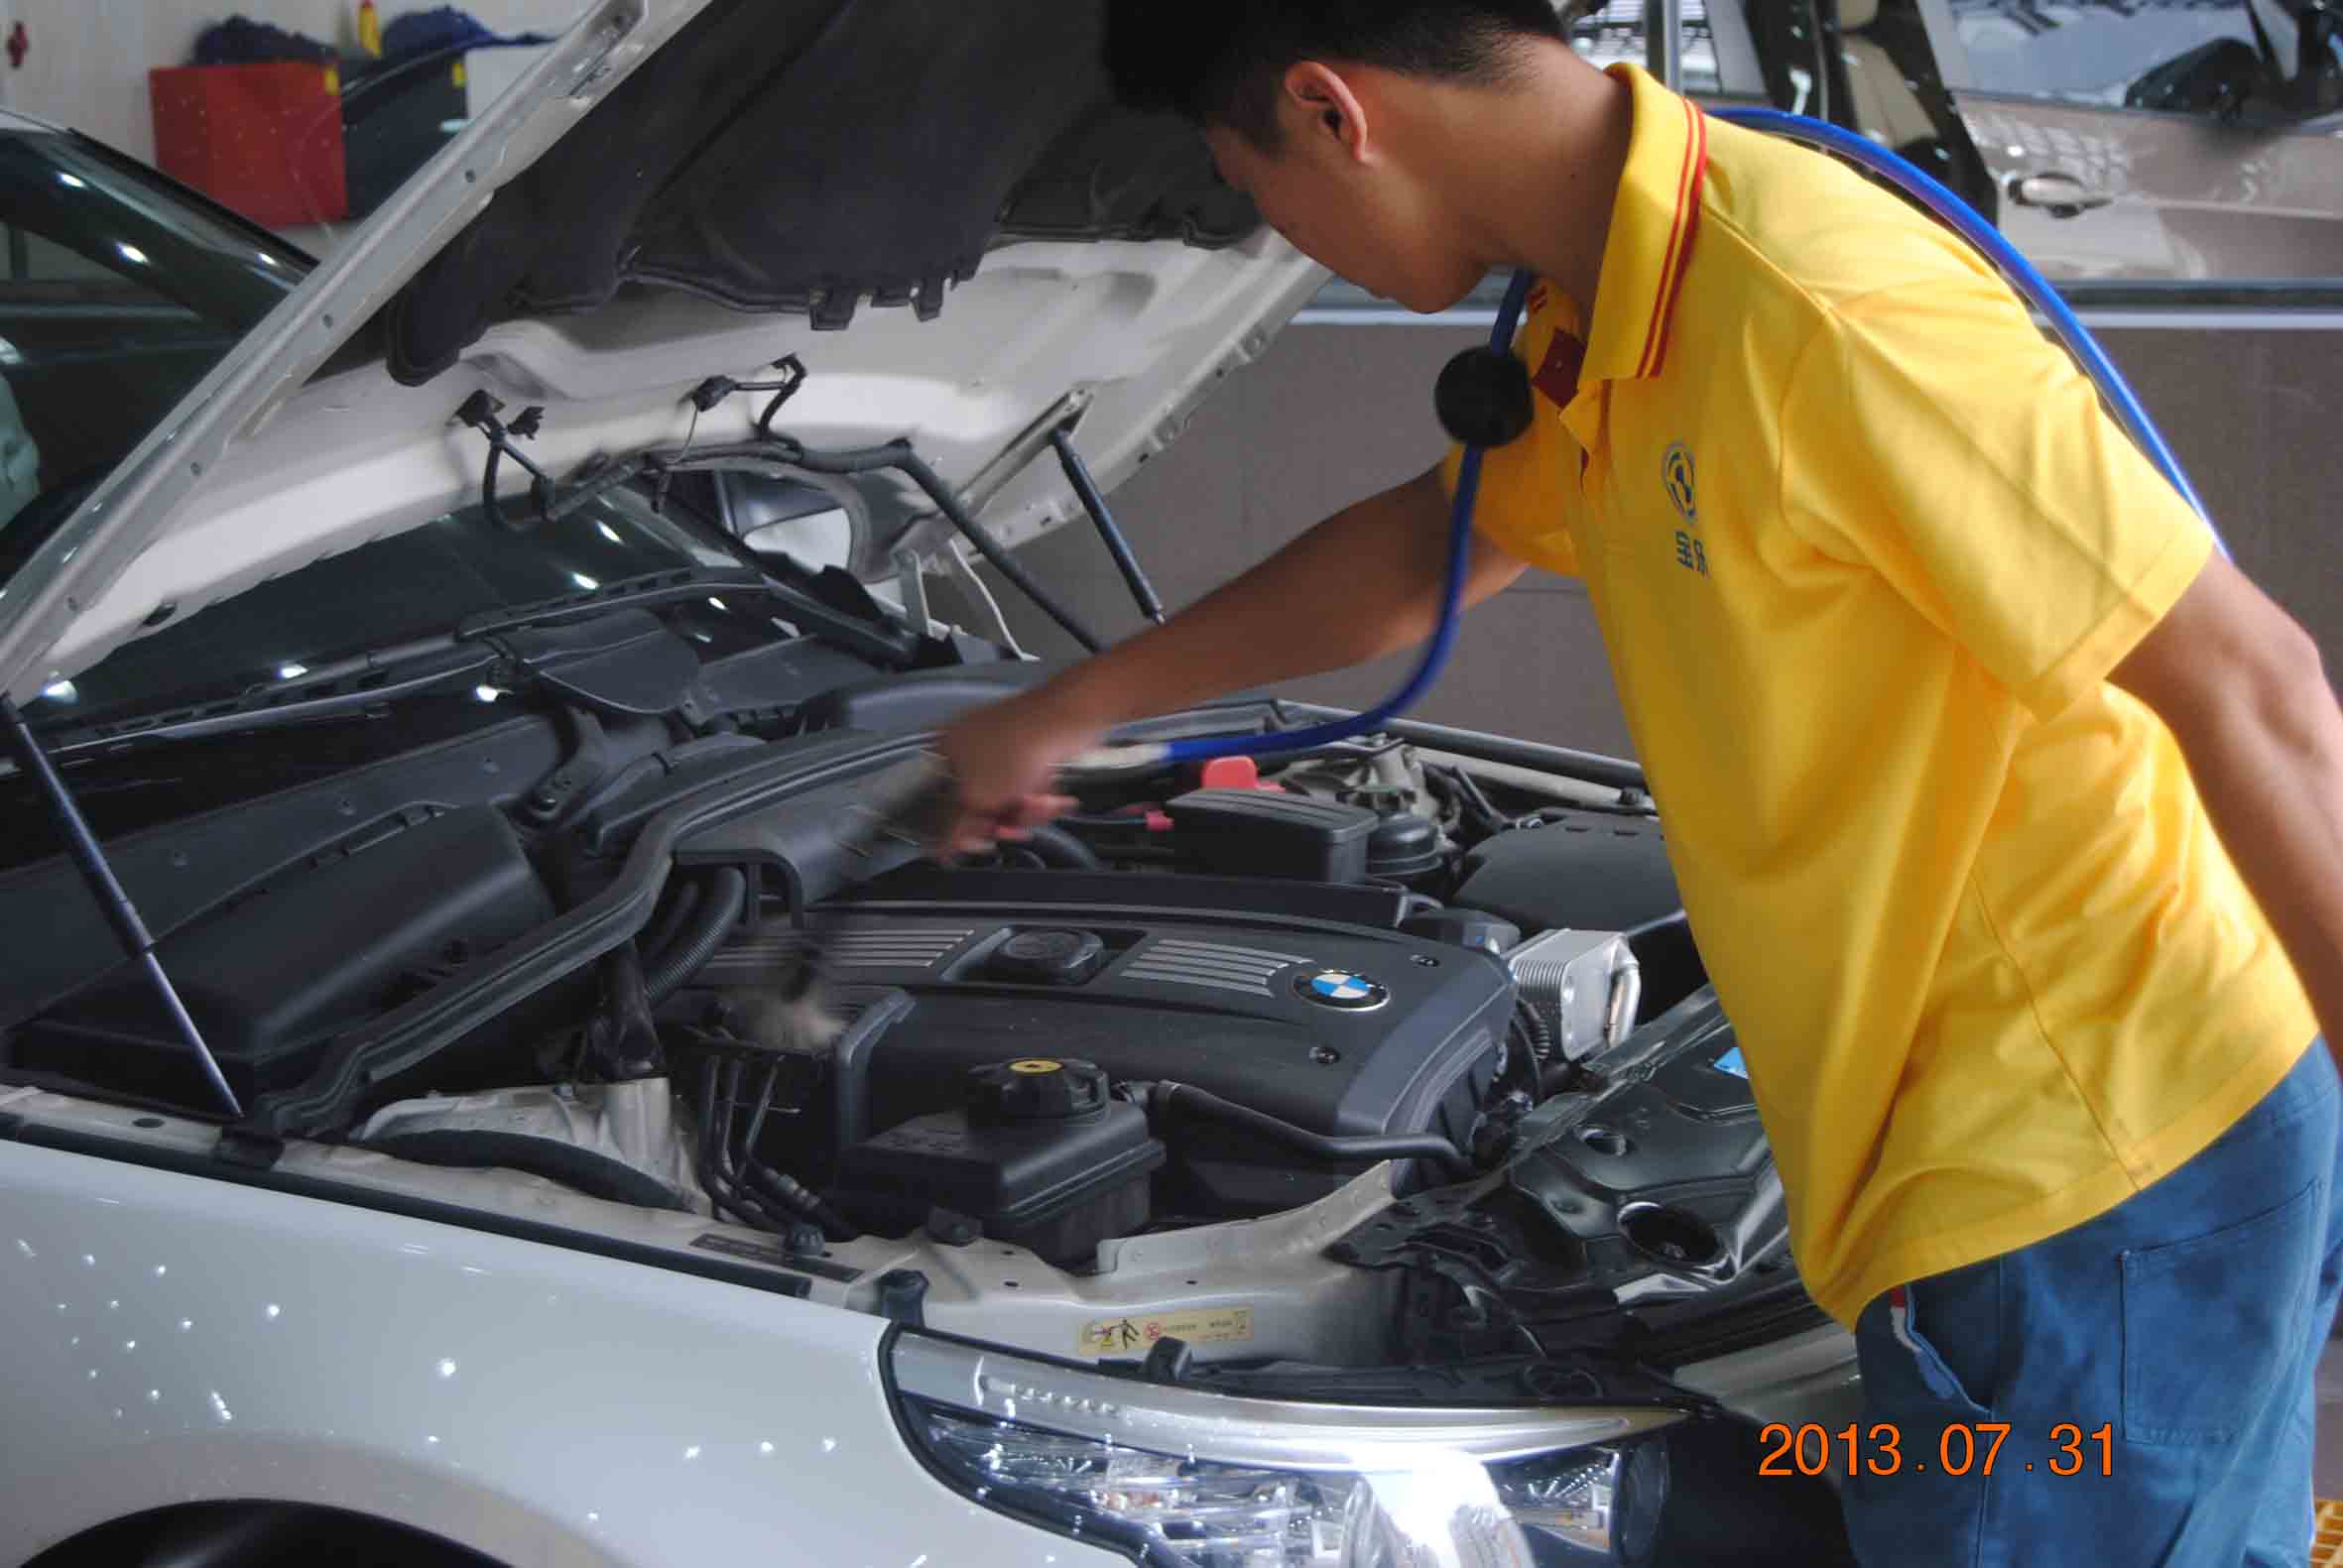 其他维修及安装 的东莞汽车维修公司就是正航汽车维修谢岗汽车维修公司2